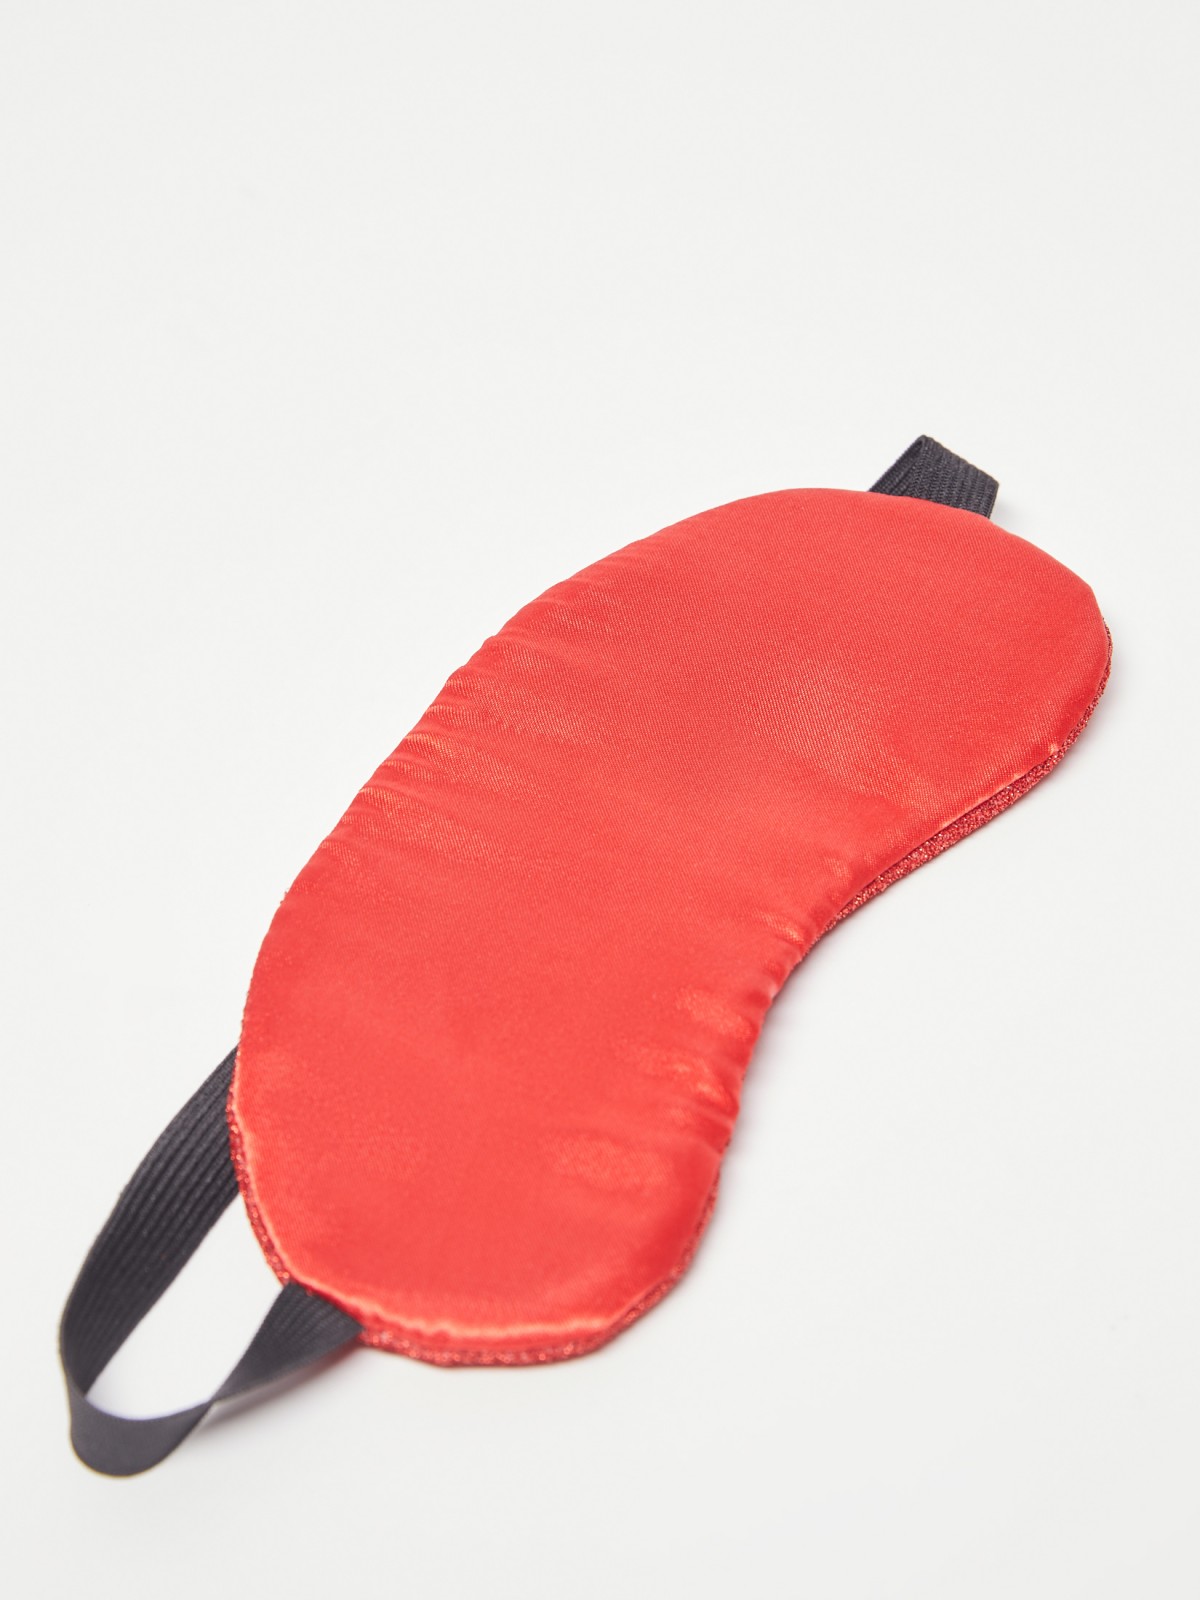 Новогодняя маска для сна zolla 021459J3G045, цвет красный, размер No_size - фото 3